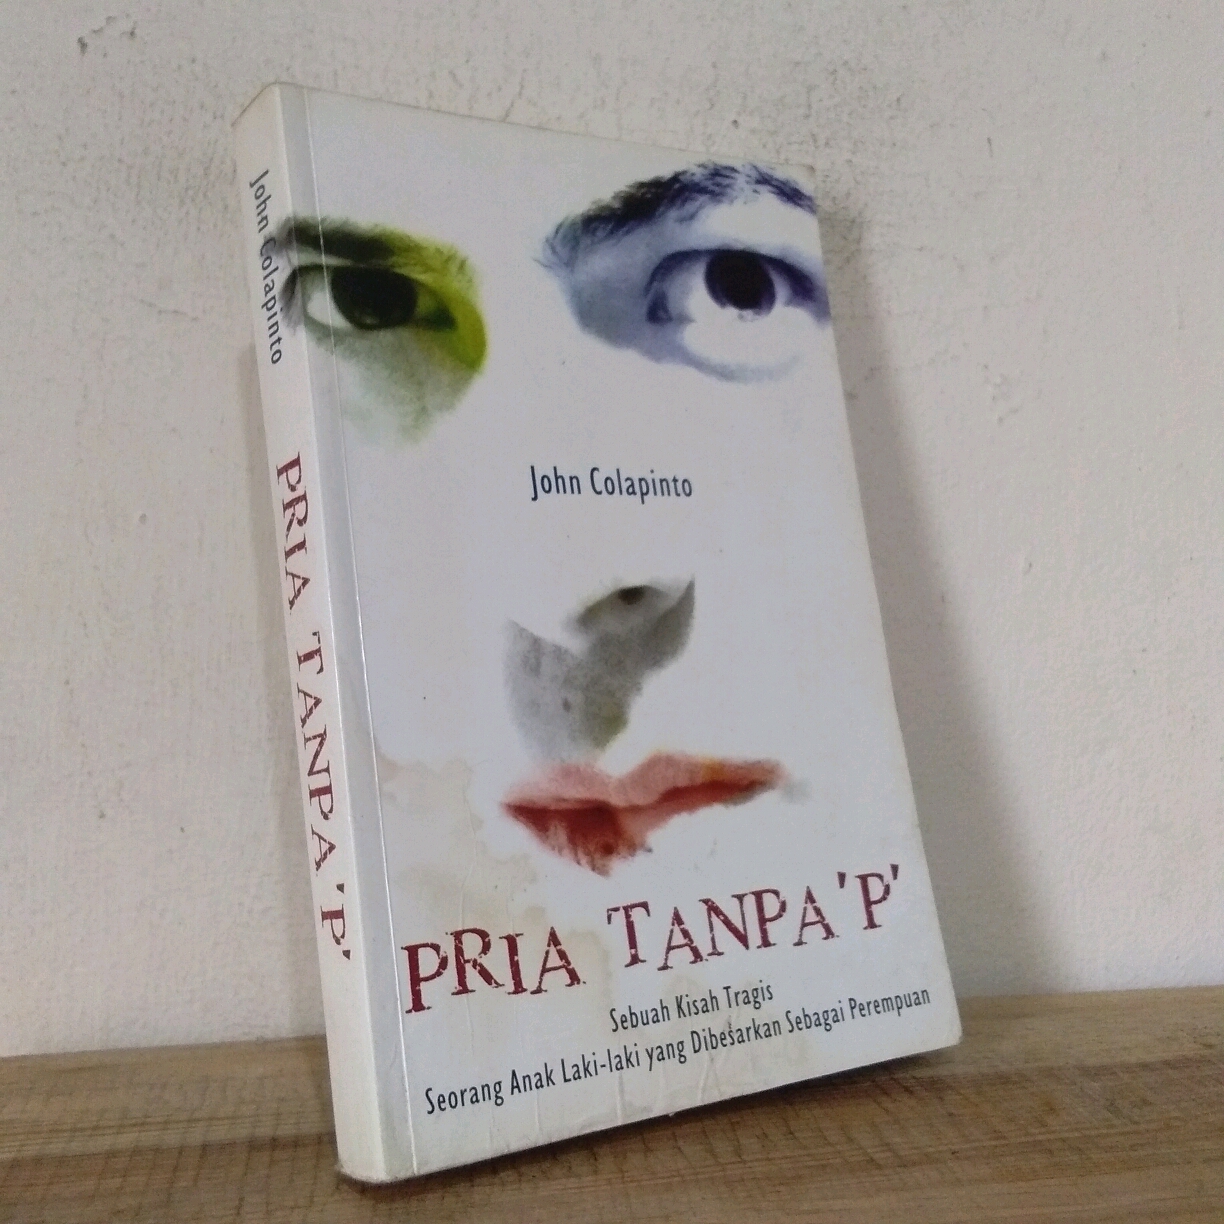 Pria Tanpa "p" :  Sebuah kisah tragis seorang anak laki-laki yang dibesarkan sebagai perempuan